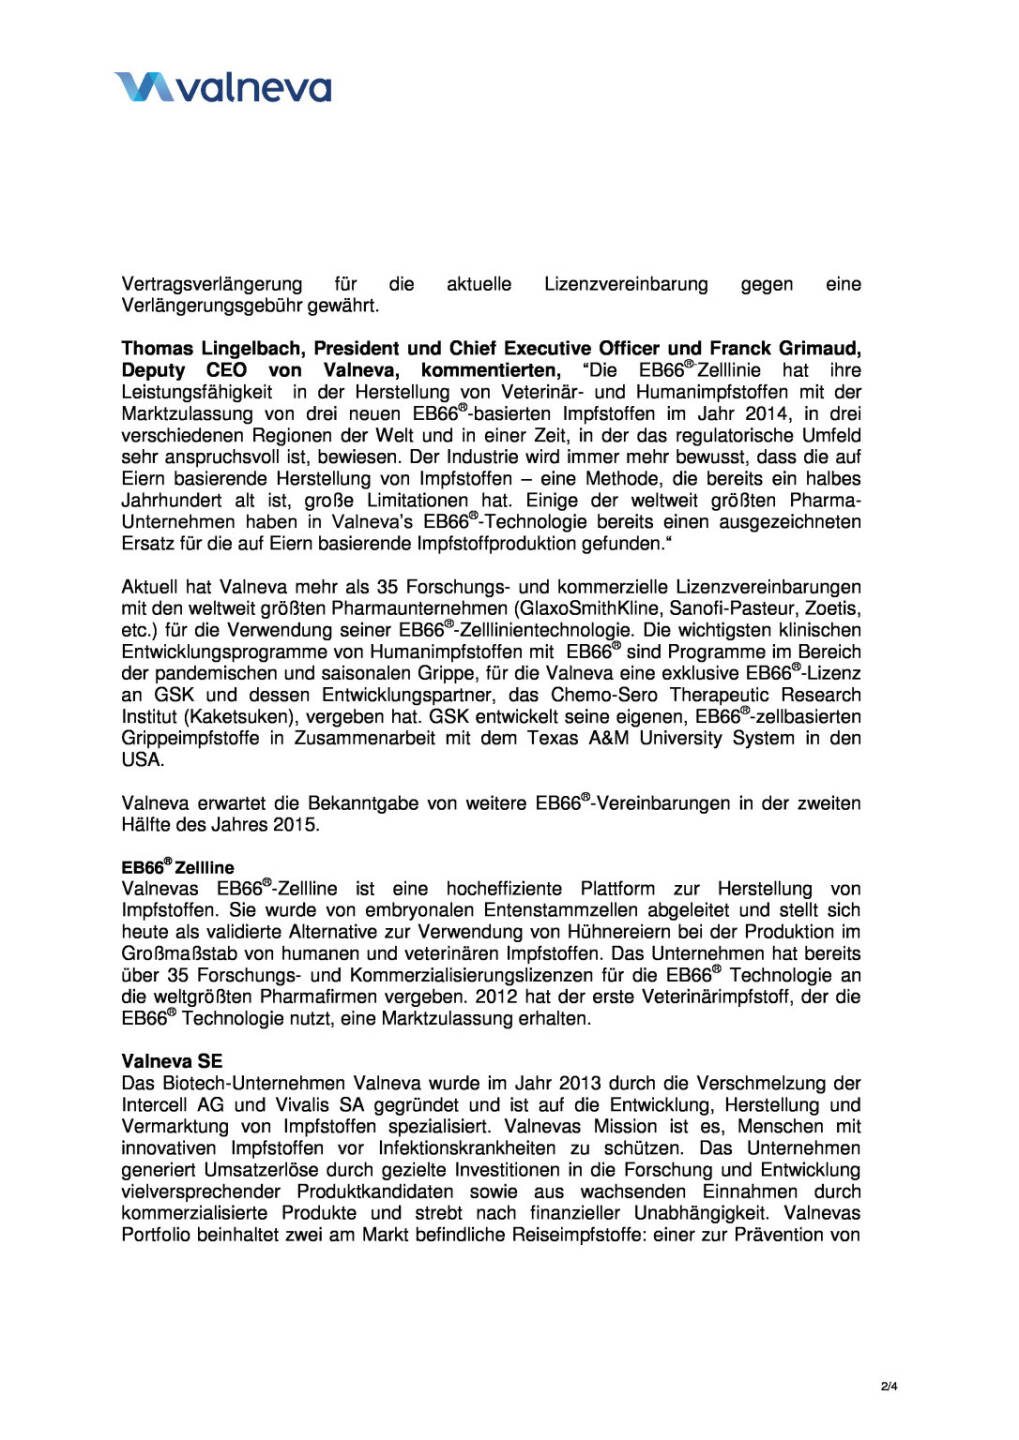 Valneva mit zwei neuen EB66-Vereinbarungen, Seite 2/4, komplettes Dokument unter http://boerse-social.com/static/uploads/file_317_valneva_mit_zwei_neuen_eb66-vereinbarungen.pdf